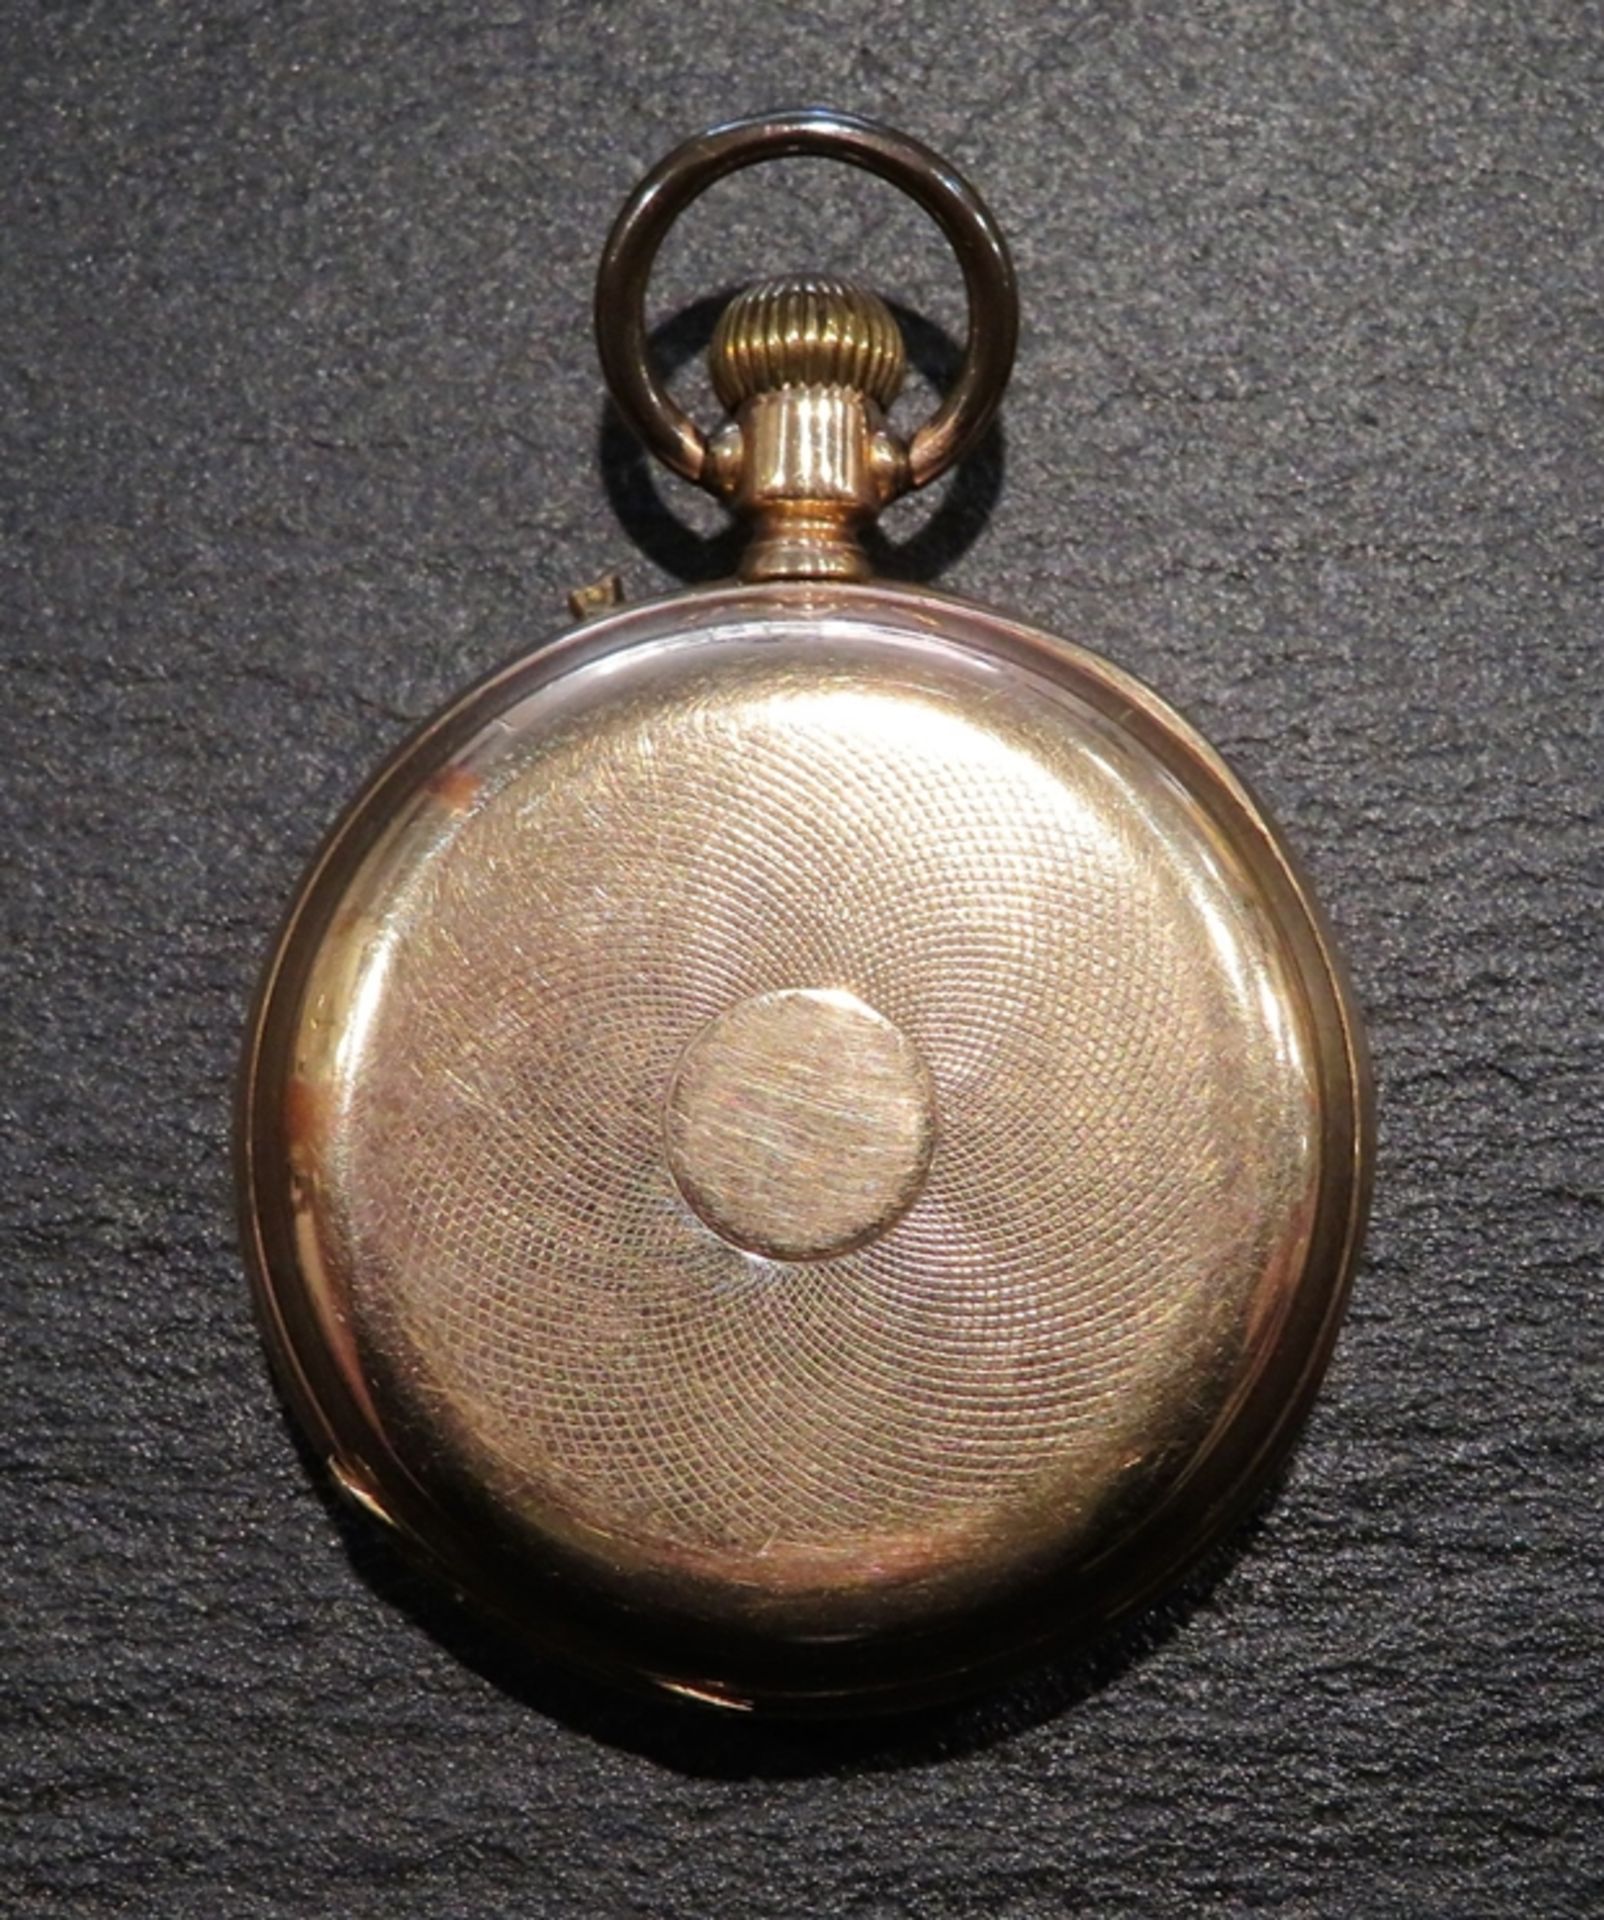 Taschenuhr, um 1900, Gehäuse Gelbgold 585/000, punziert, Innendeckel Metall, 68 g, Kronenaufzug, We - Bild 2 aus 3